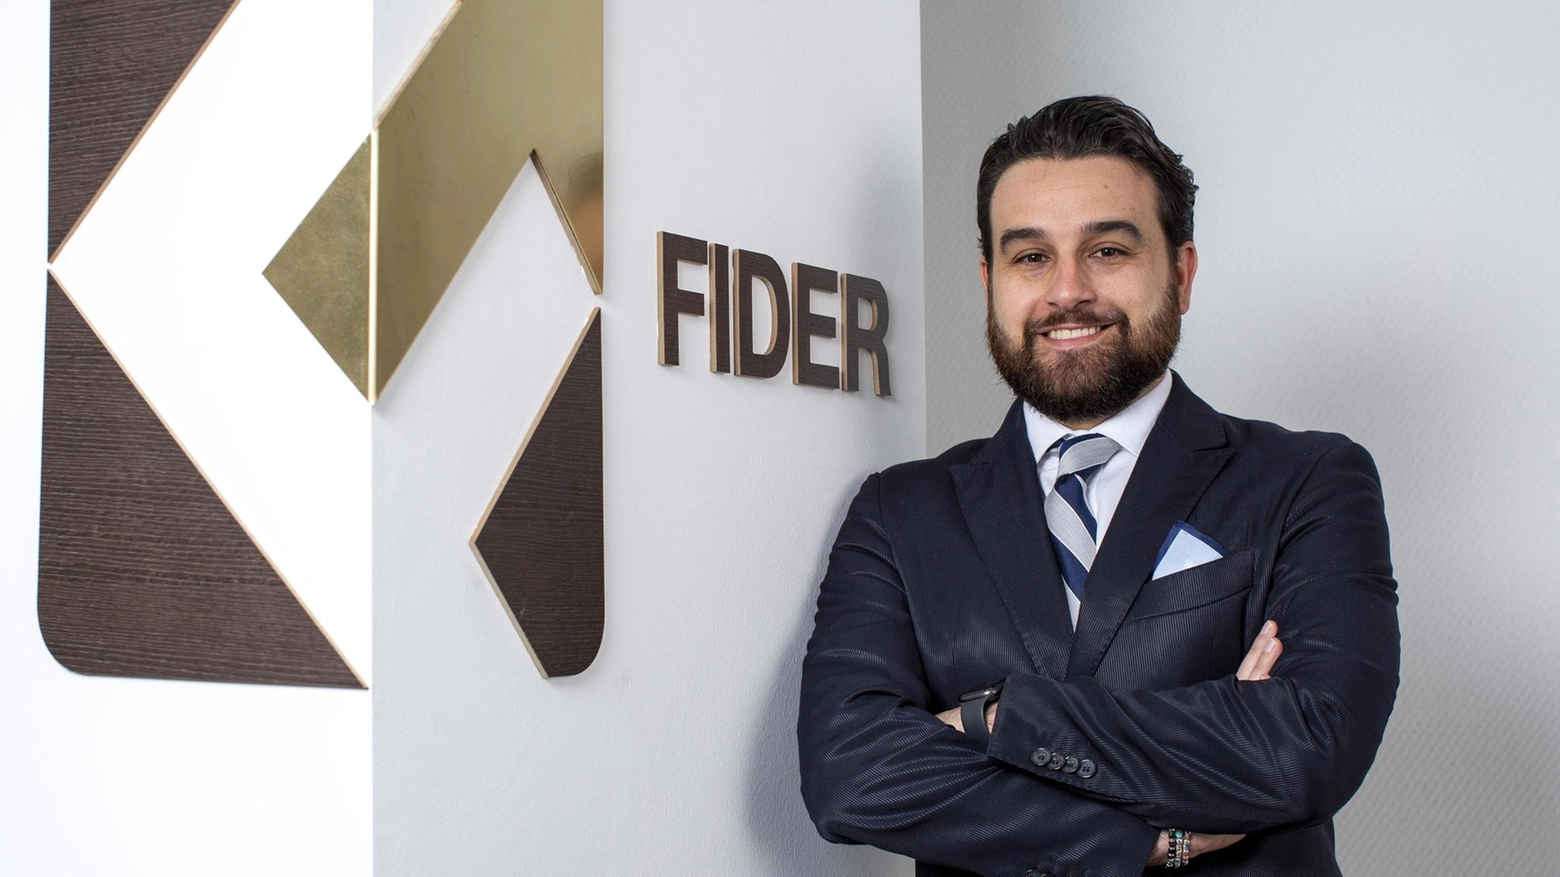 Inaugurata filiale Fider a Civitanova, confidi di riferimento per Pmi. Convegno su finanza sostenibile per imprese marchigiane.